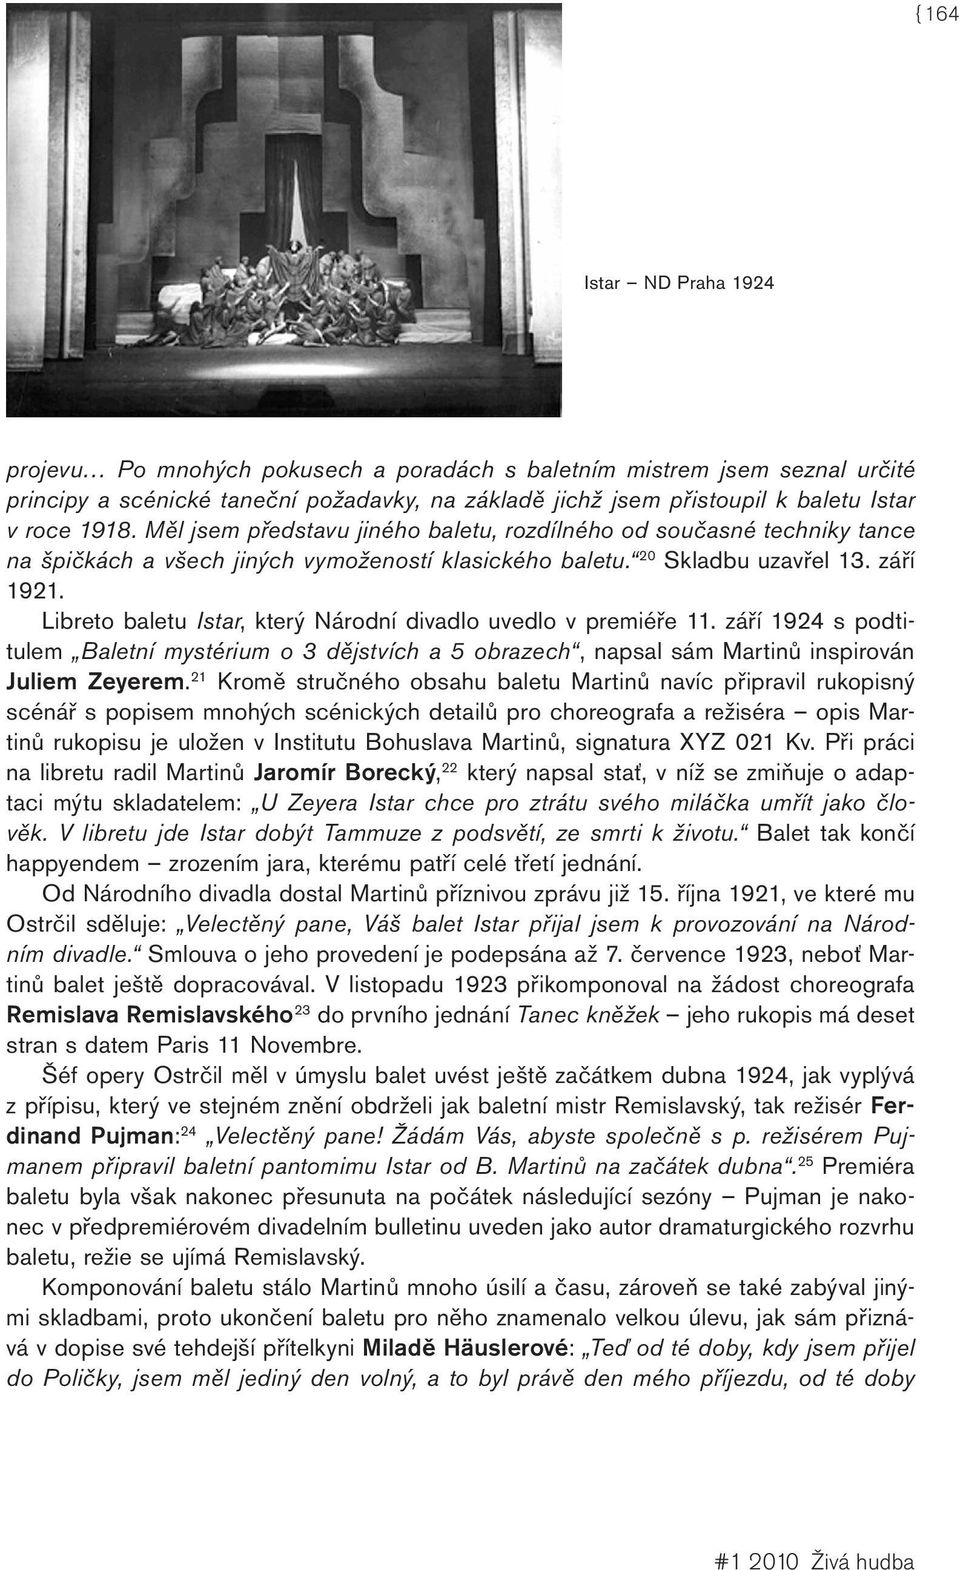 Libreto baletu Istar, který Národní divadlo uvedlo v premiéře 11. září 1924 s podtitulem Baletní mystérium o 3 dějstvích a 5 obrazech, napsal sám Martinů inspirován Juliem Zeyerem.